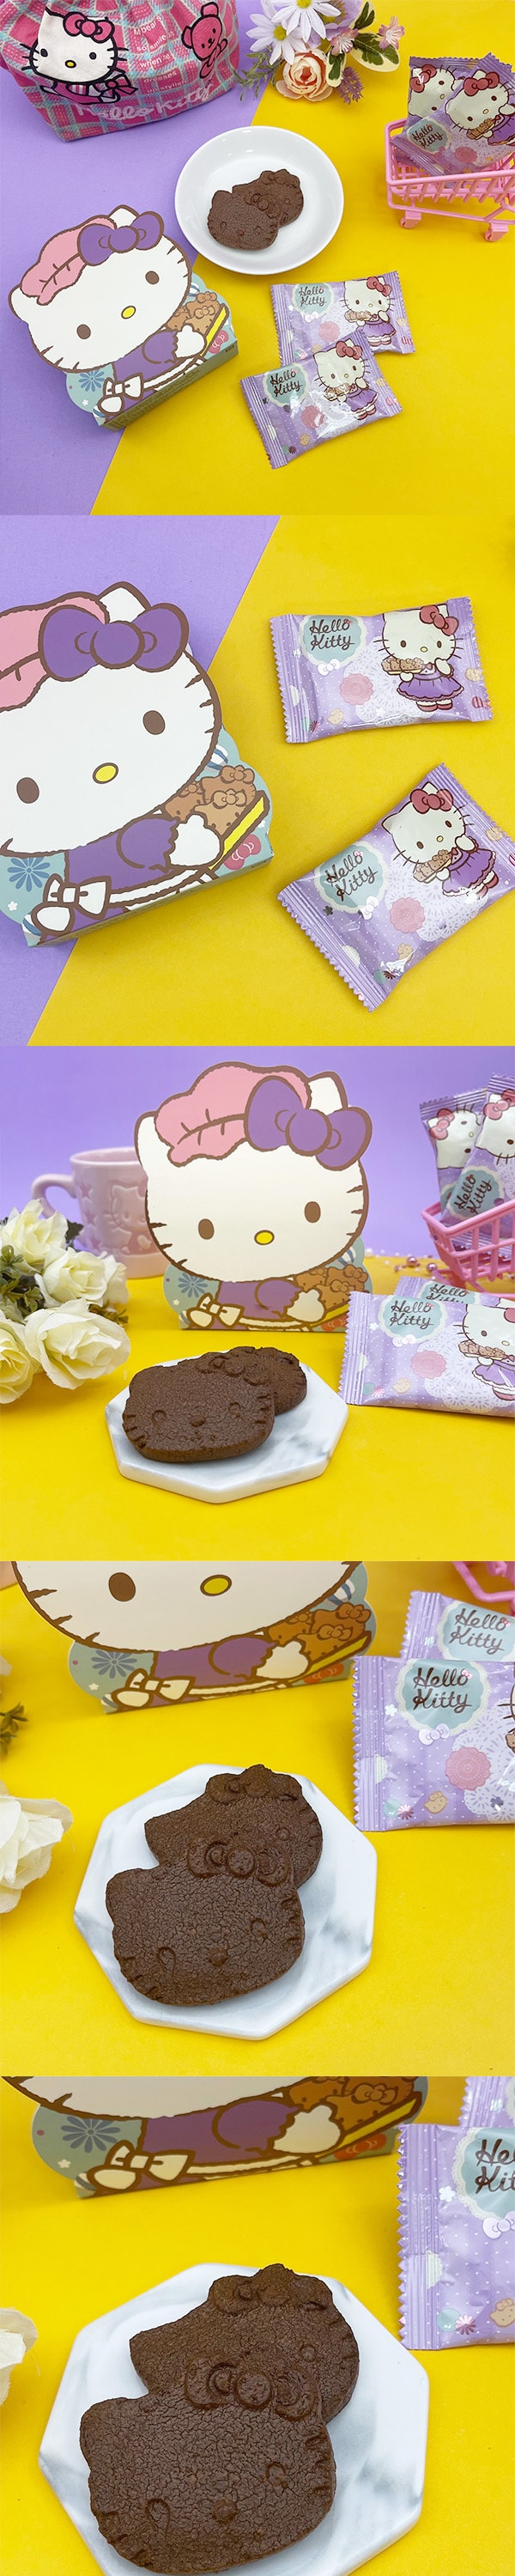 [台湾直邮]红樱花 KT造型小西饼 巧克力迷你包 39g 3入